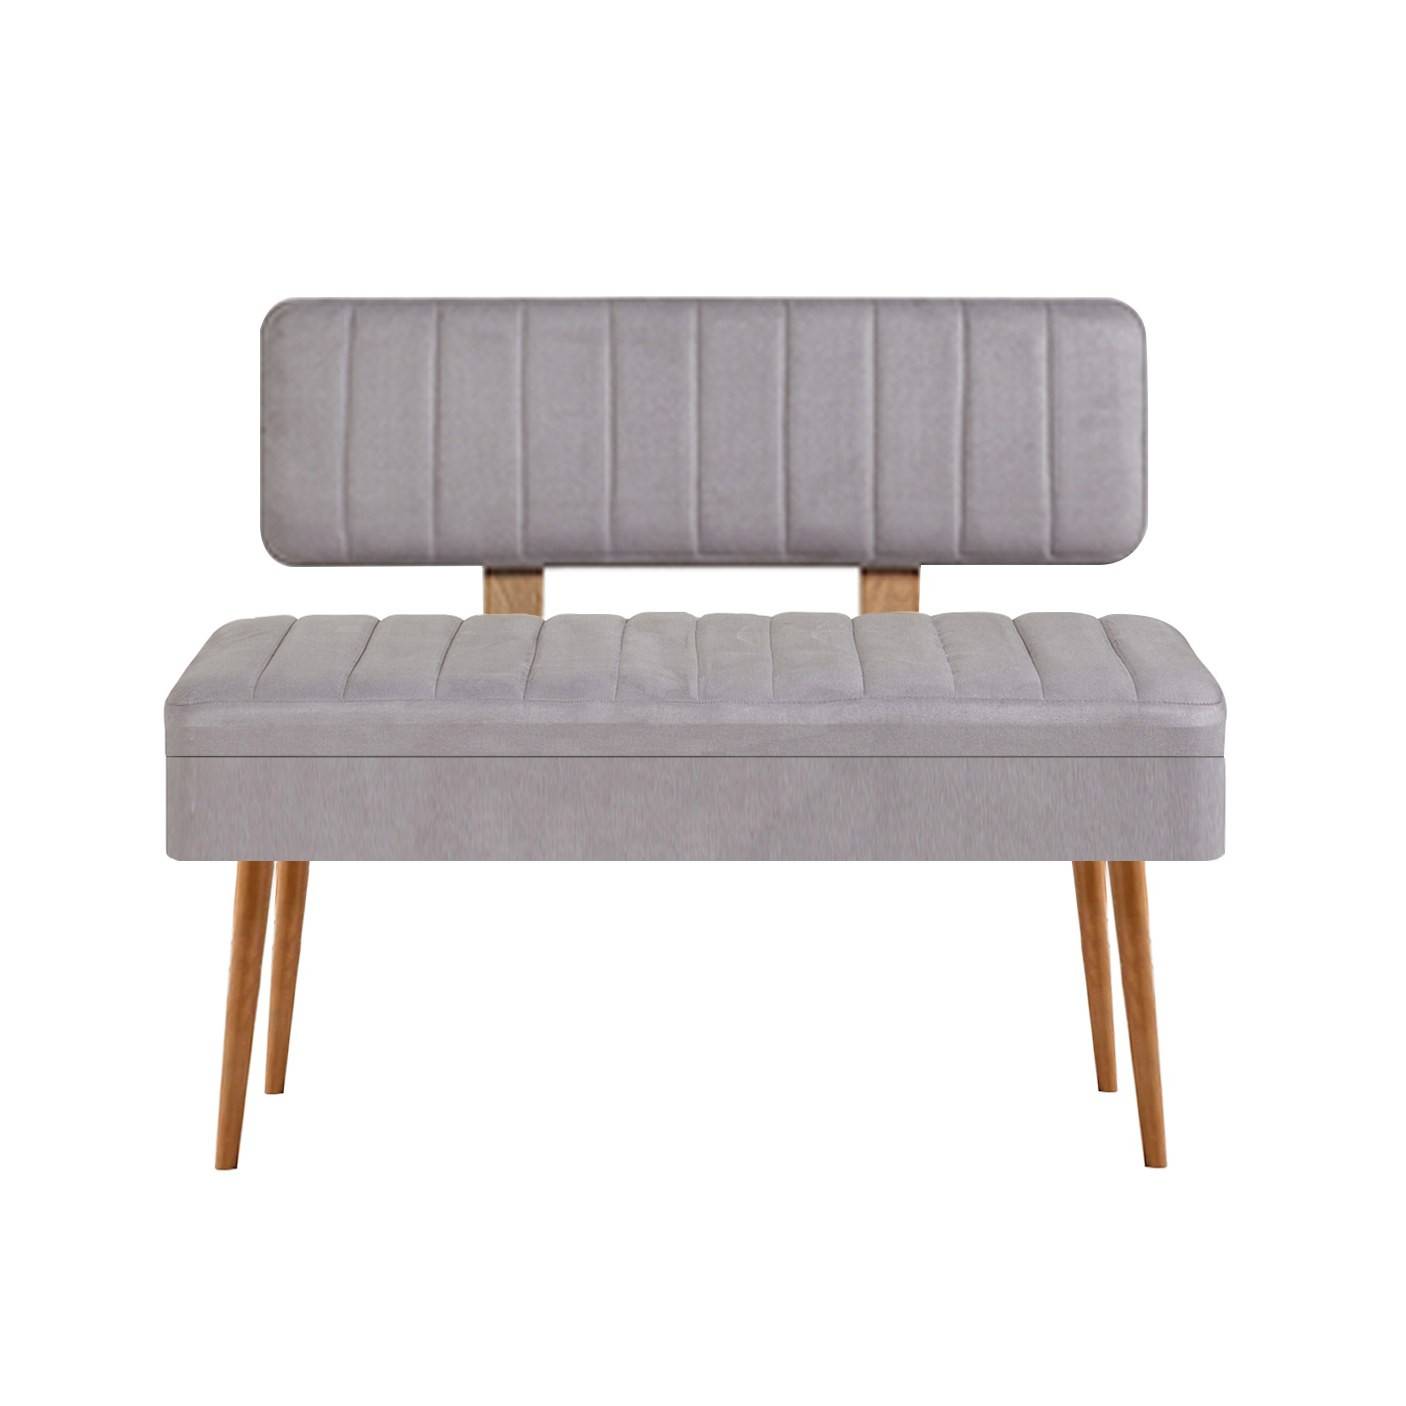 Molva asiento banco tapizado con respaldo L105cm Madera clara y tejido Gris